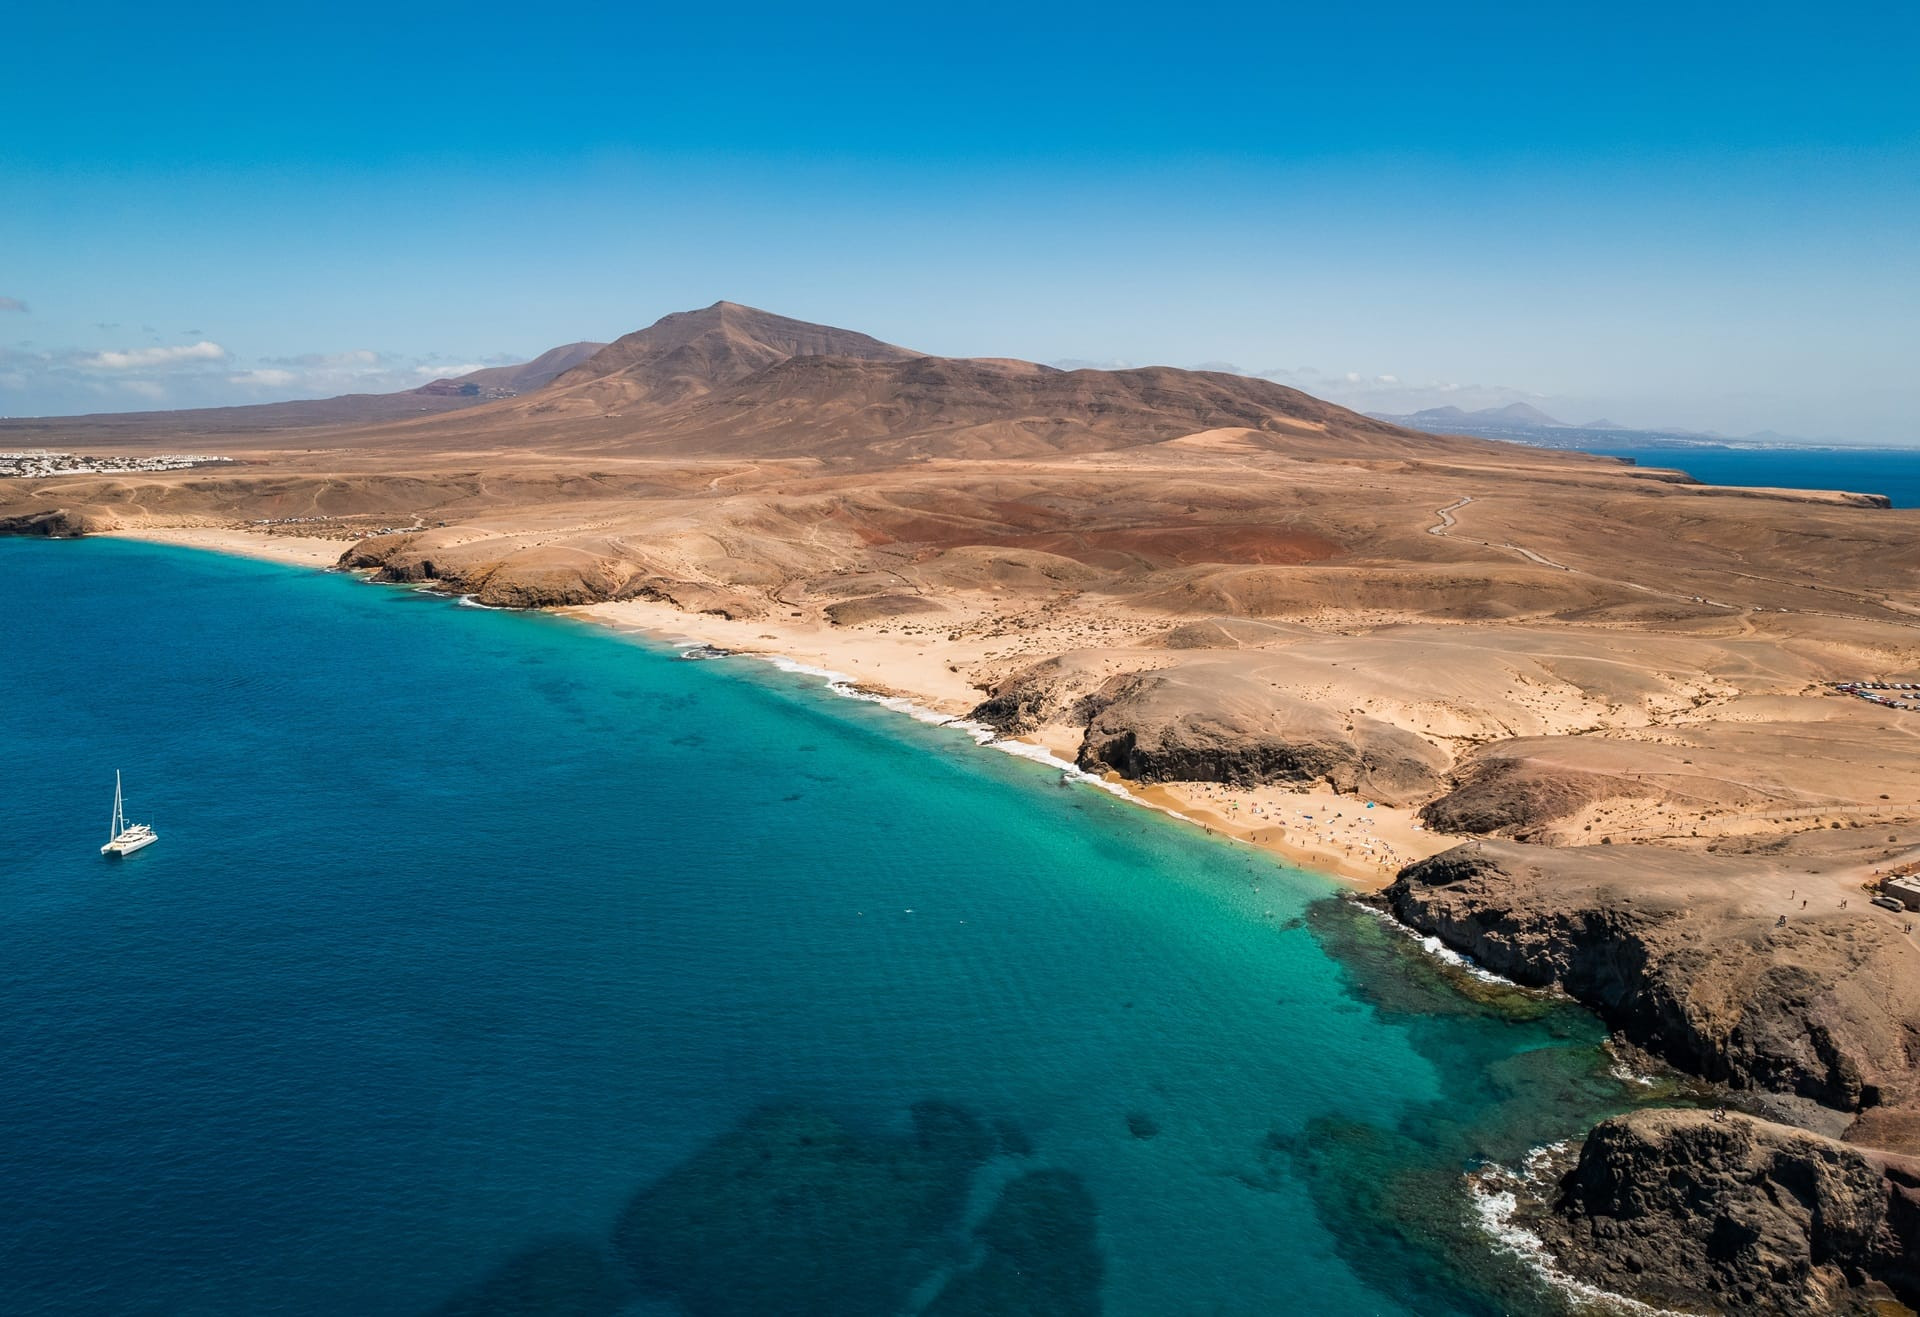 Vista panorámica de la Playa del Papagayo en Lanzarote (Islas Canarias). Foto: Shutterstock